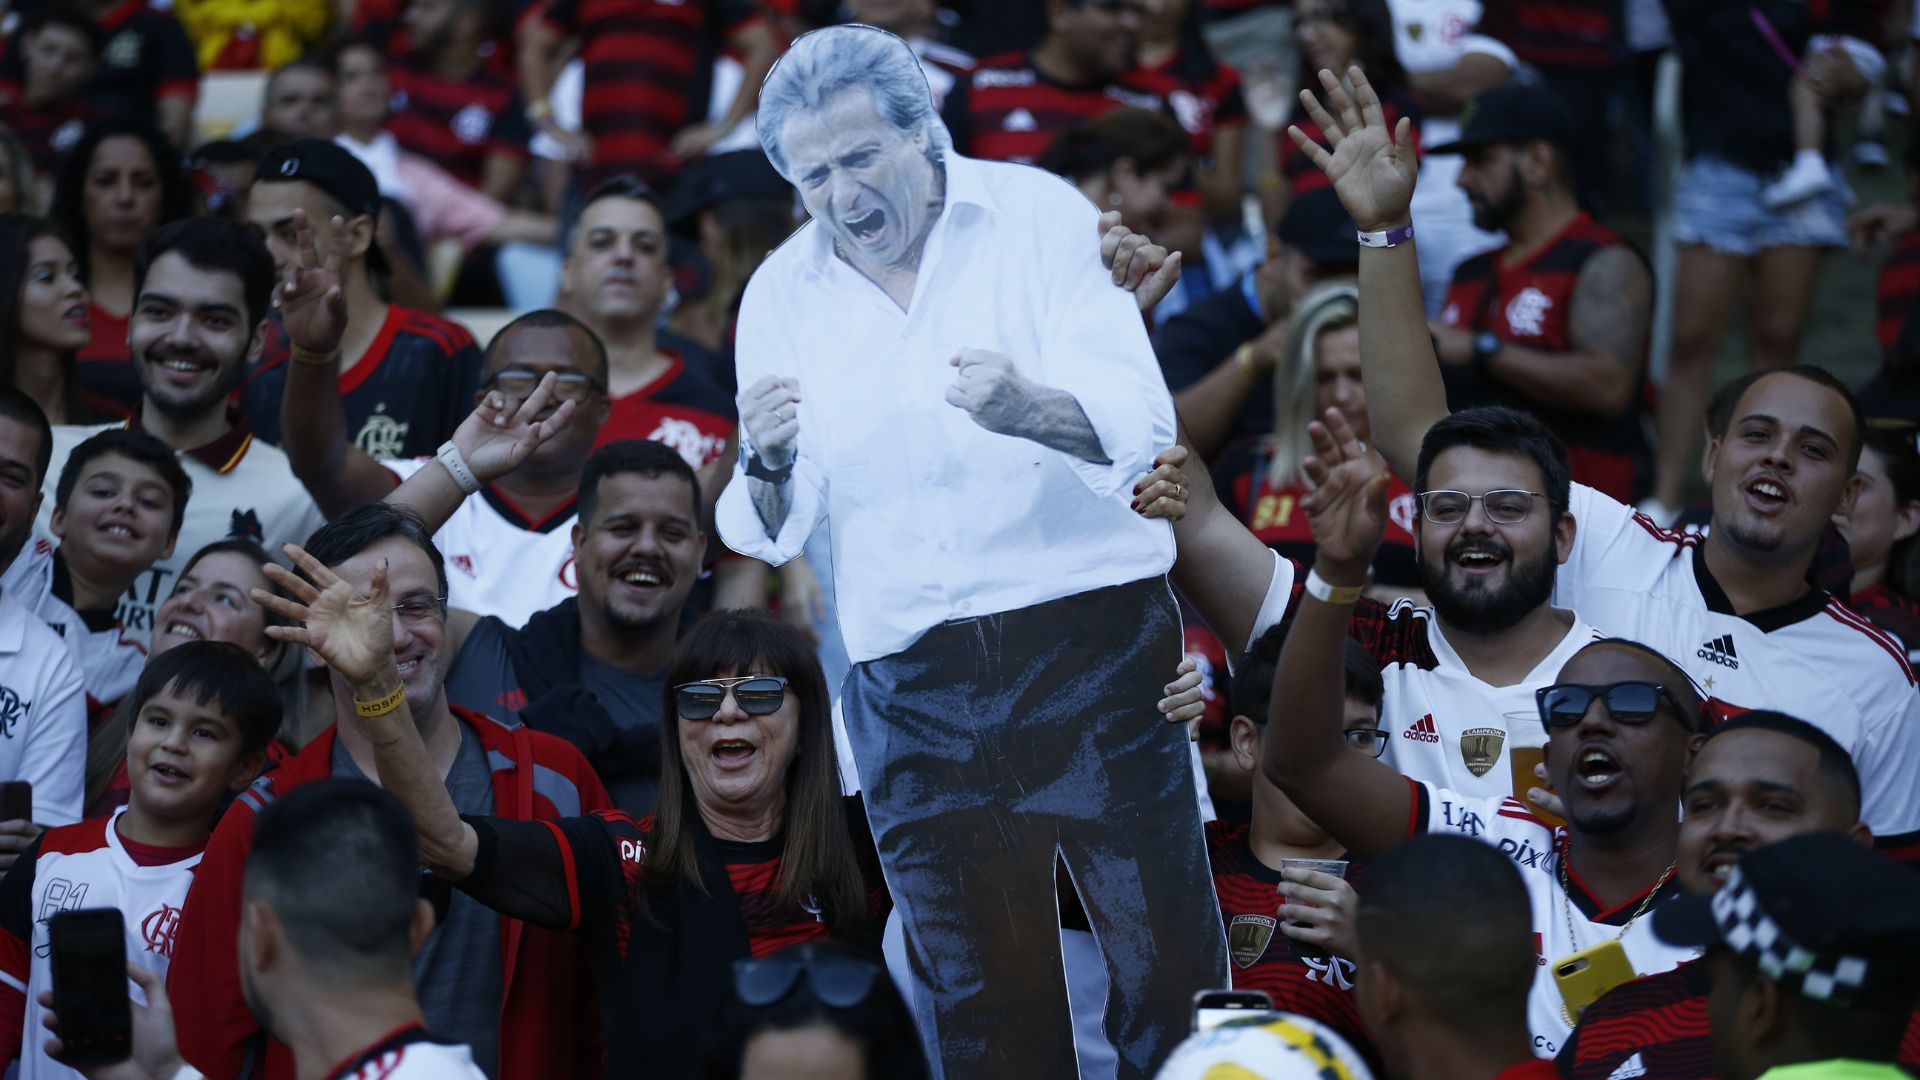 Torcedores do Flamengo carregando cartaz com a imagem de Jorge Jesus (Crédito: Getty Images)